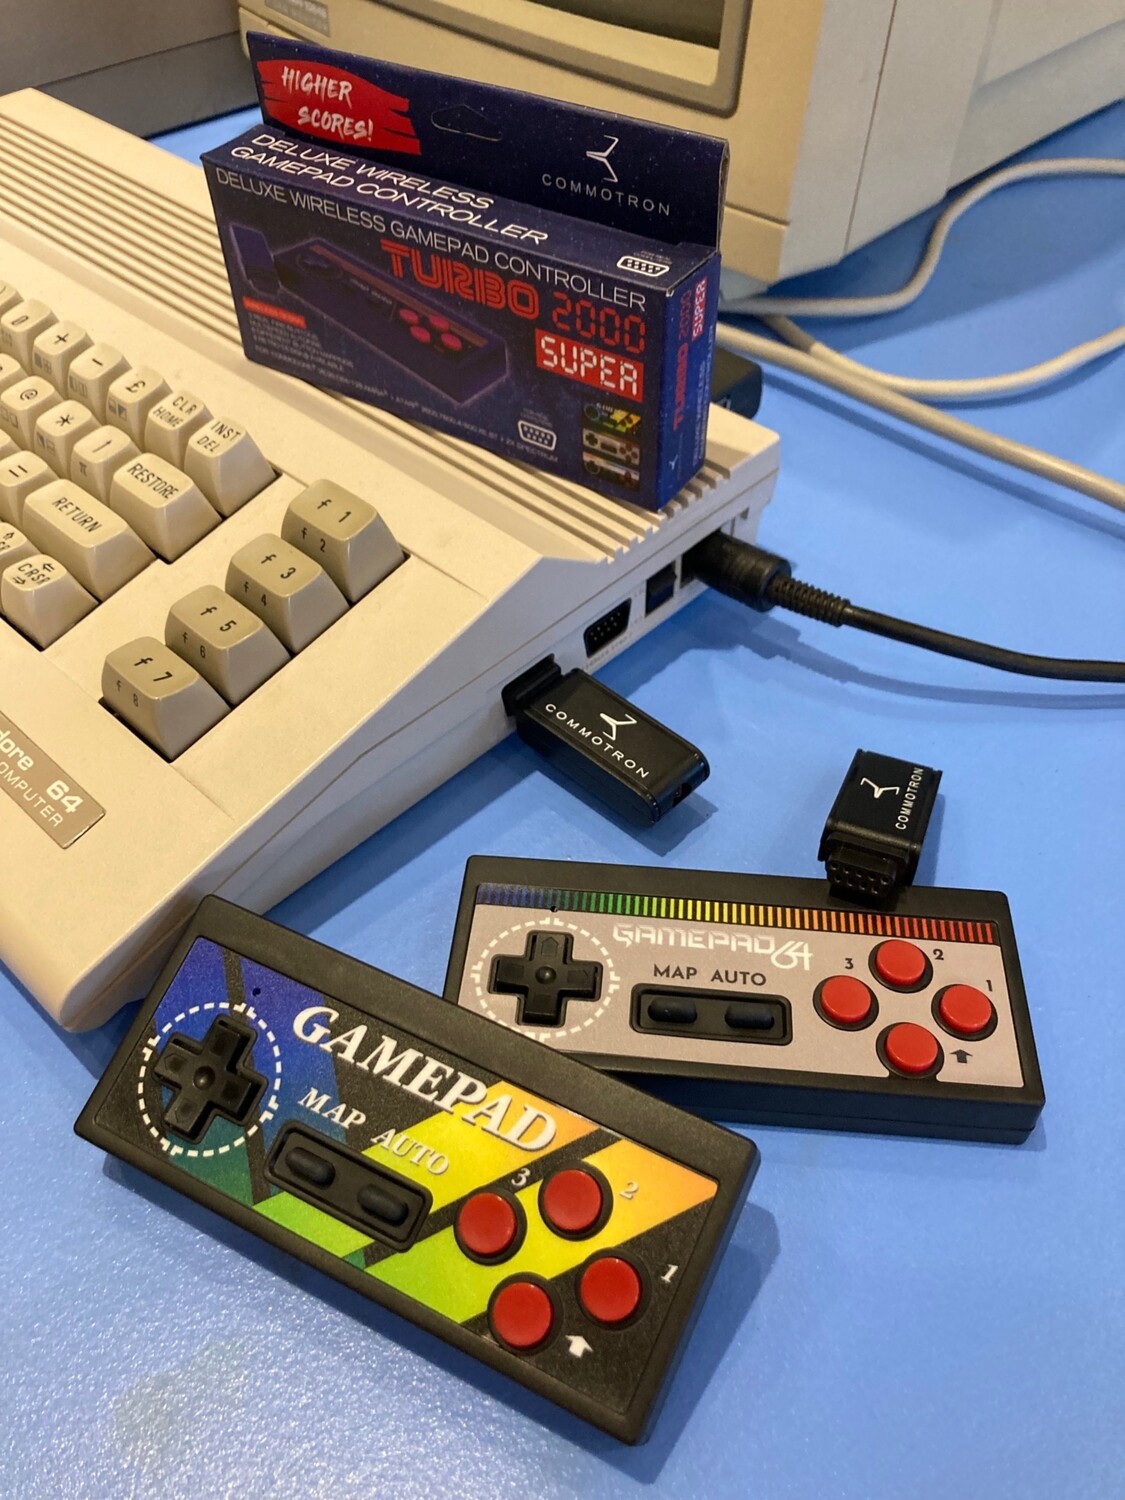 Commotron Gamepad Turbo 2000 Super